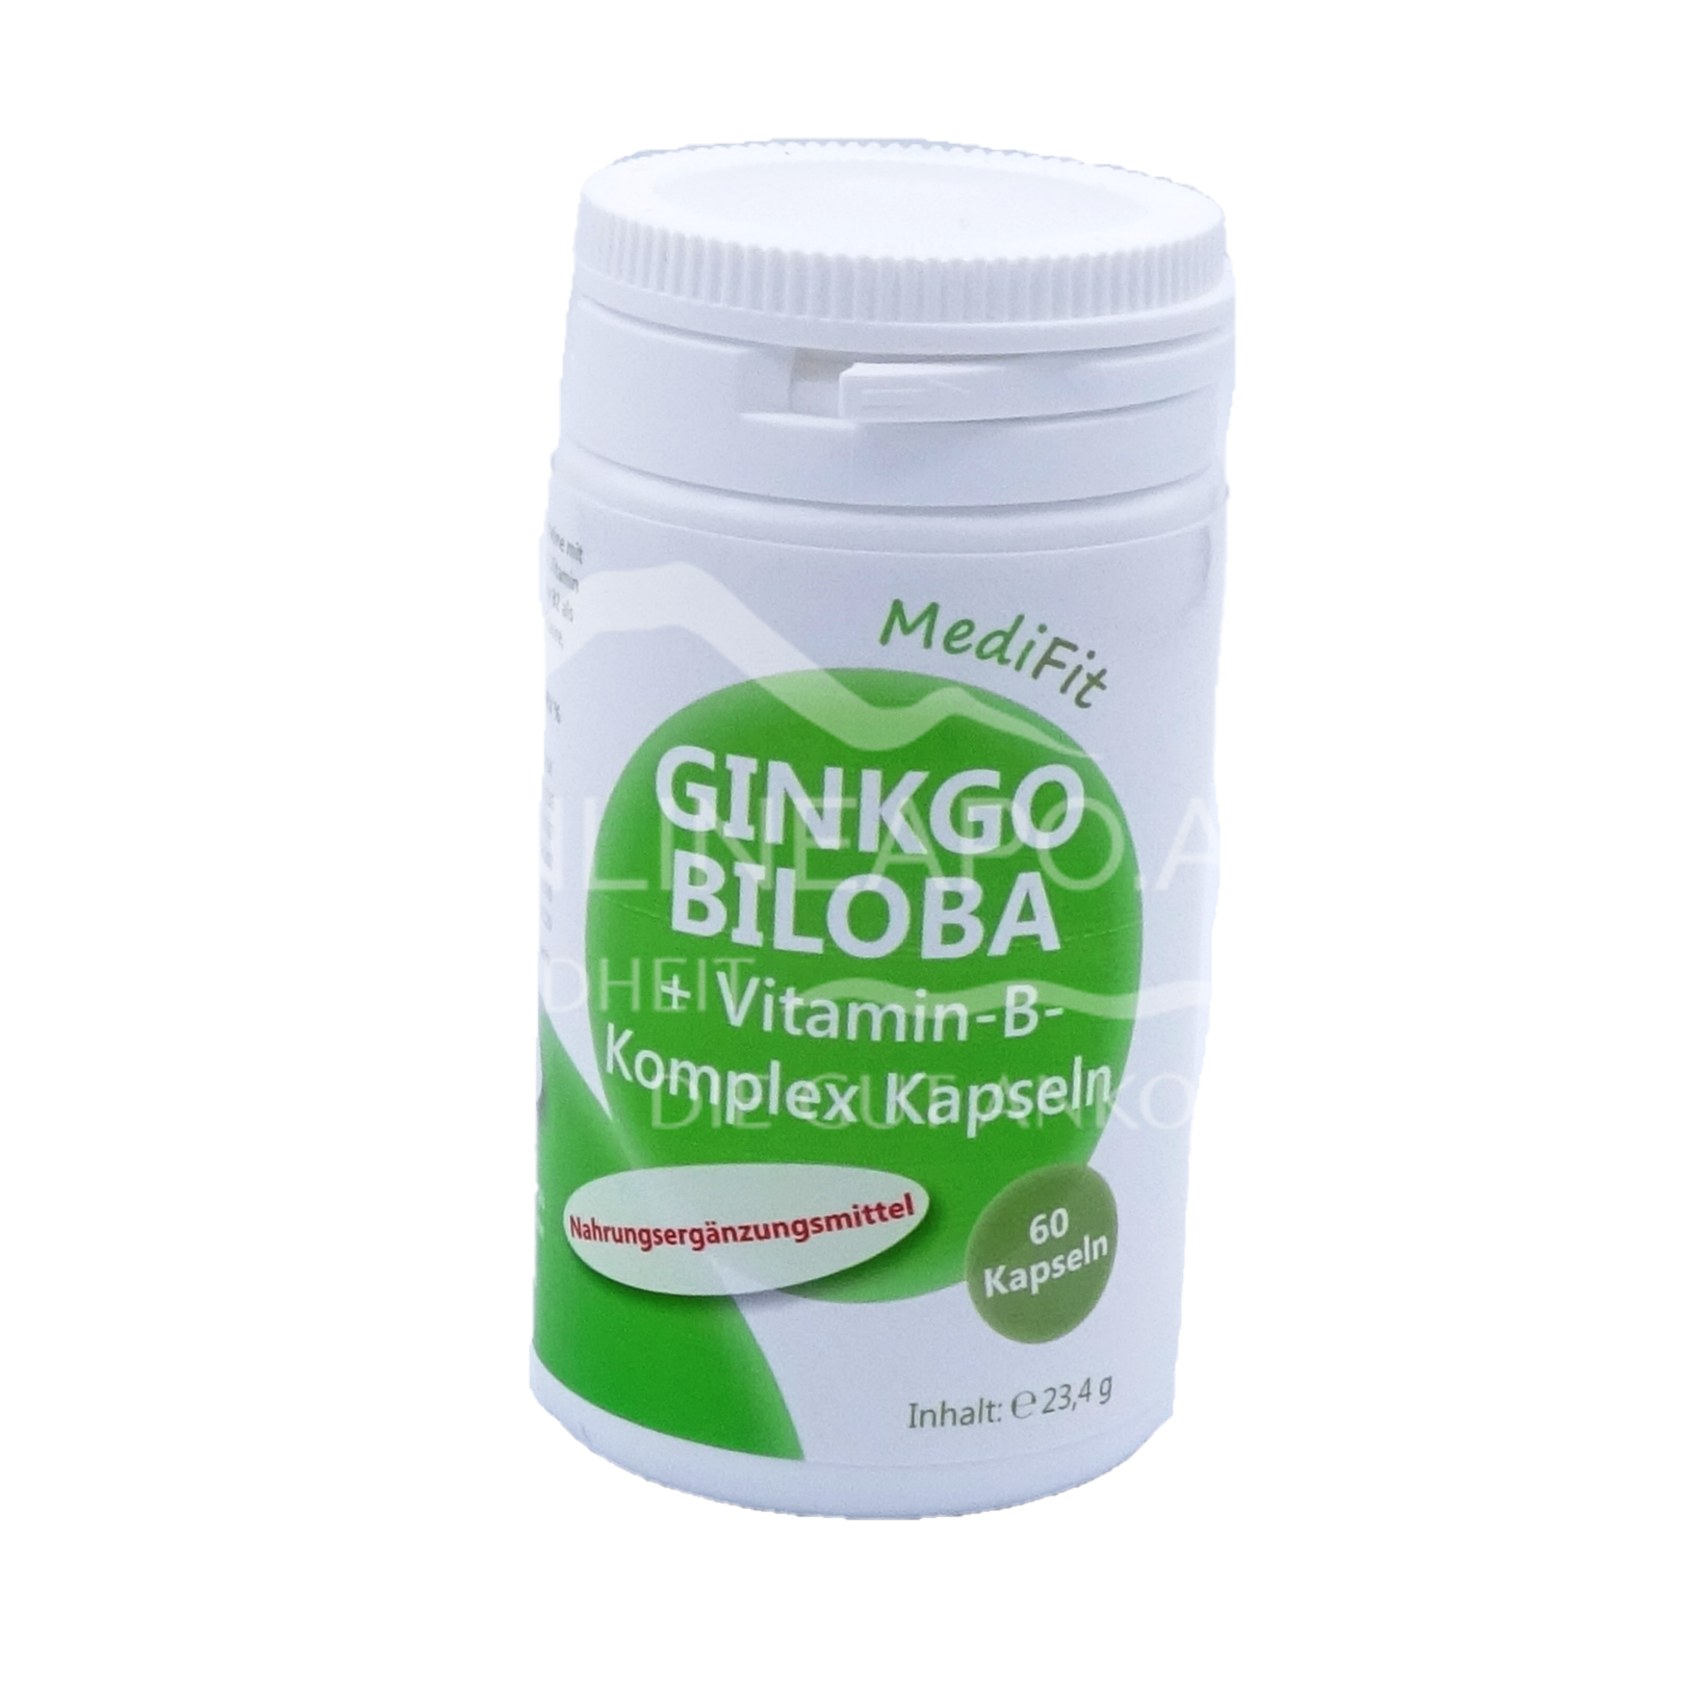 Ginkgo Biloba + Vitamin-B-Komplex Kapseln